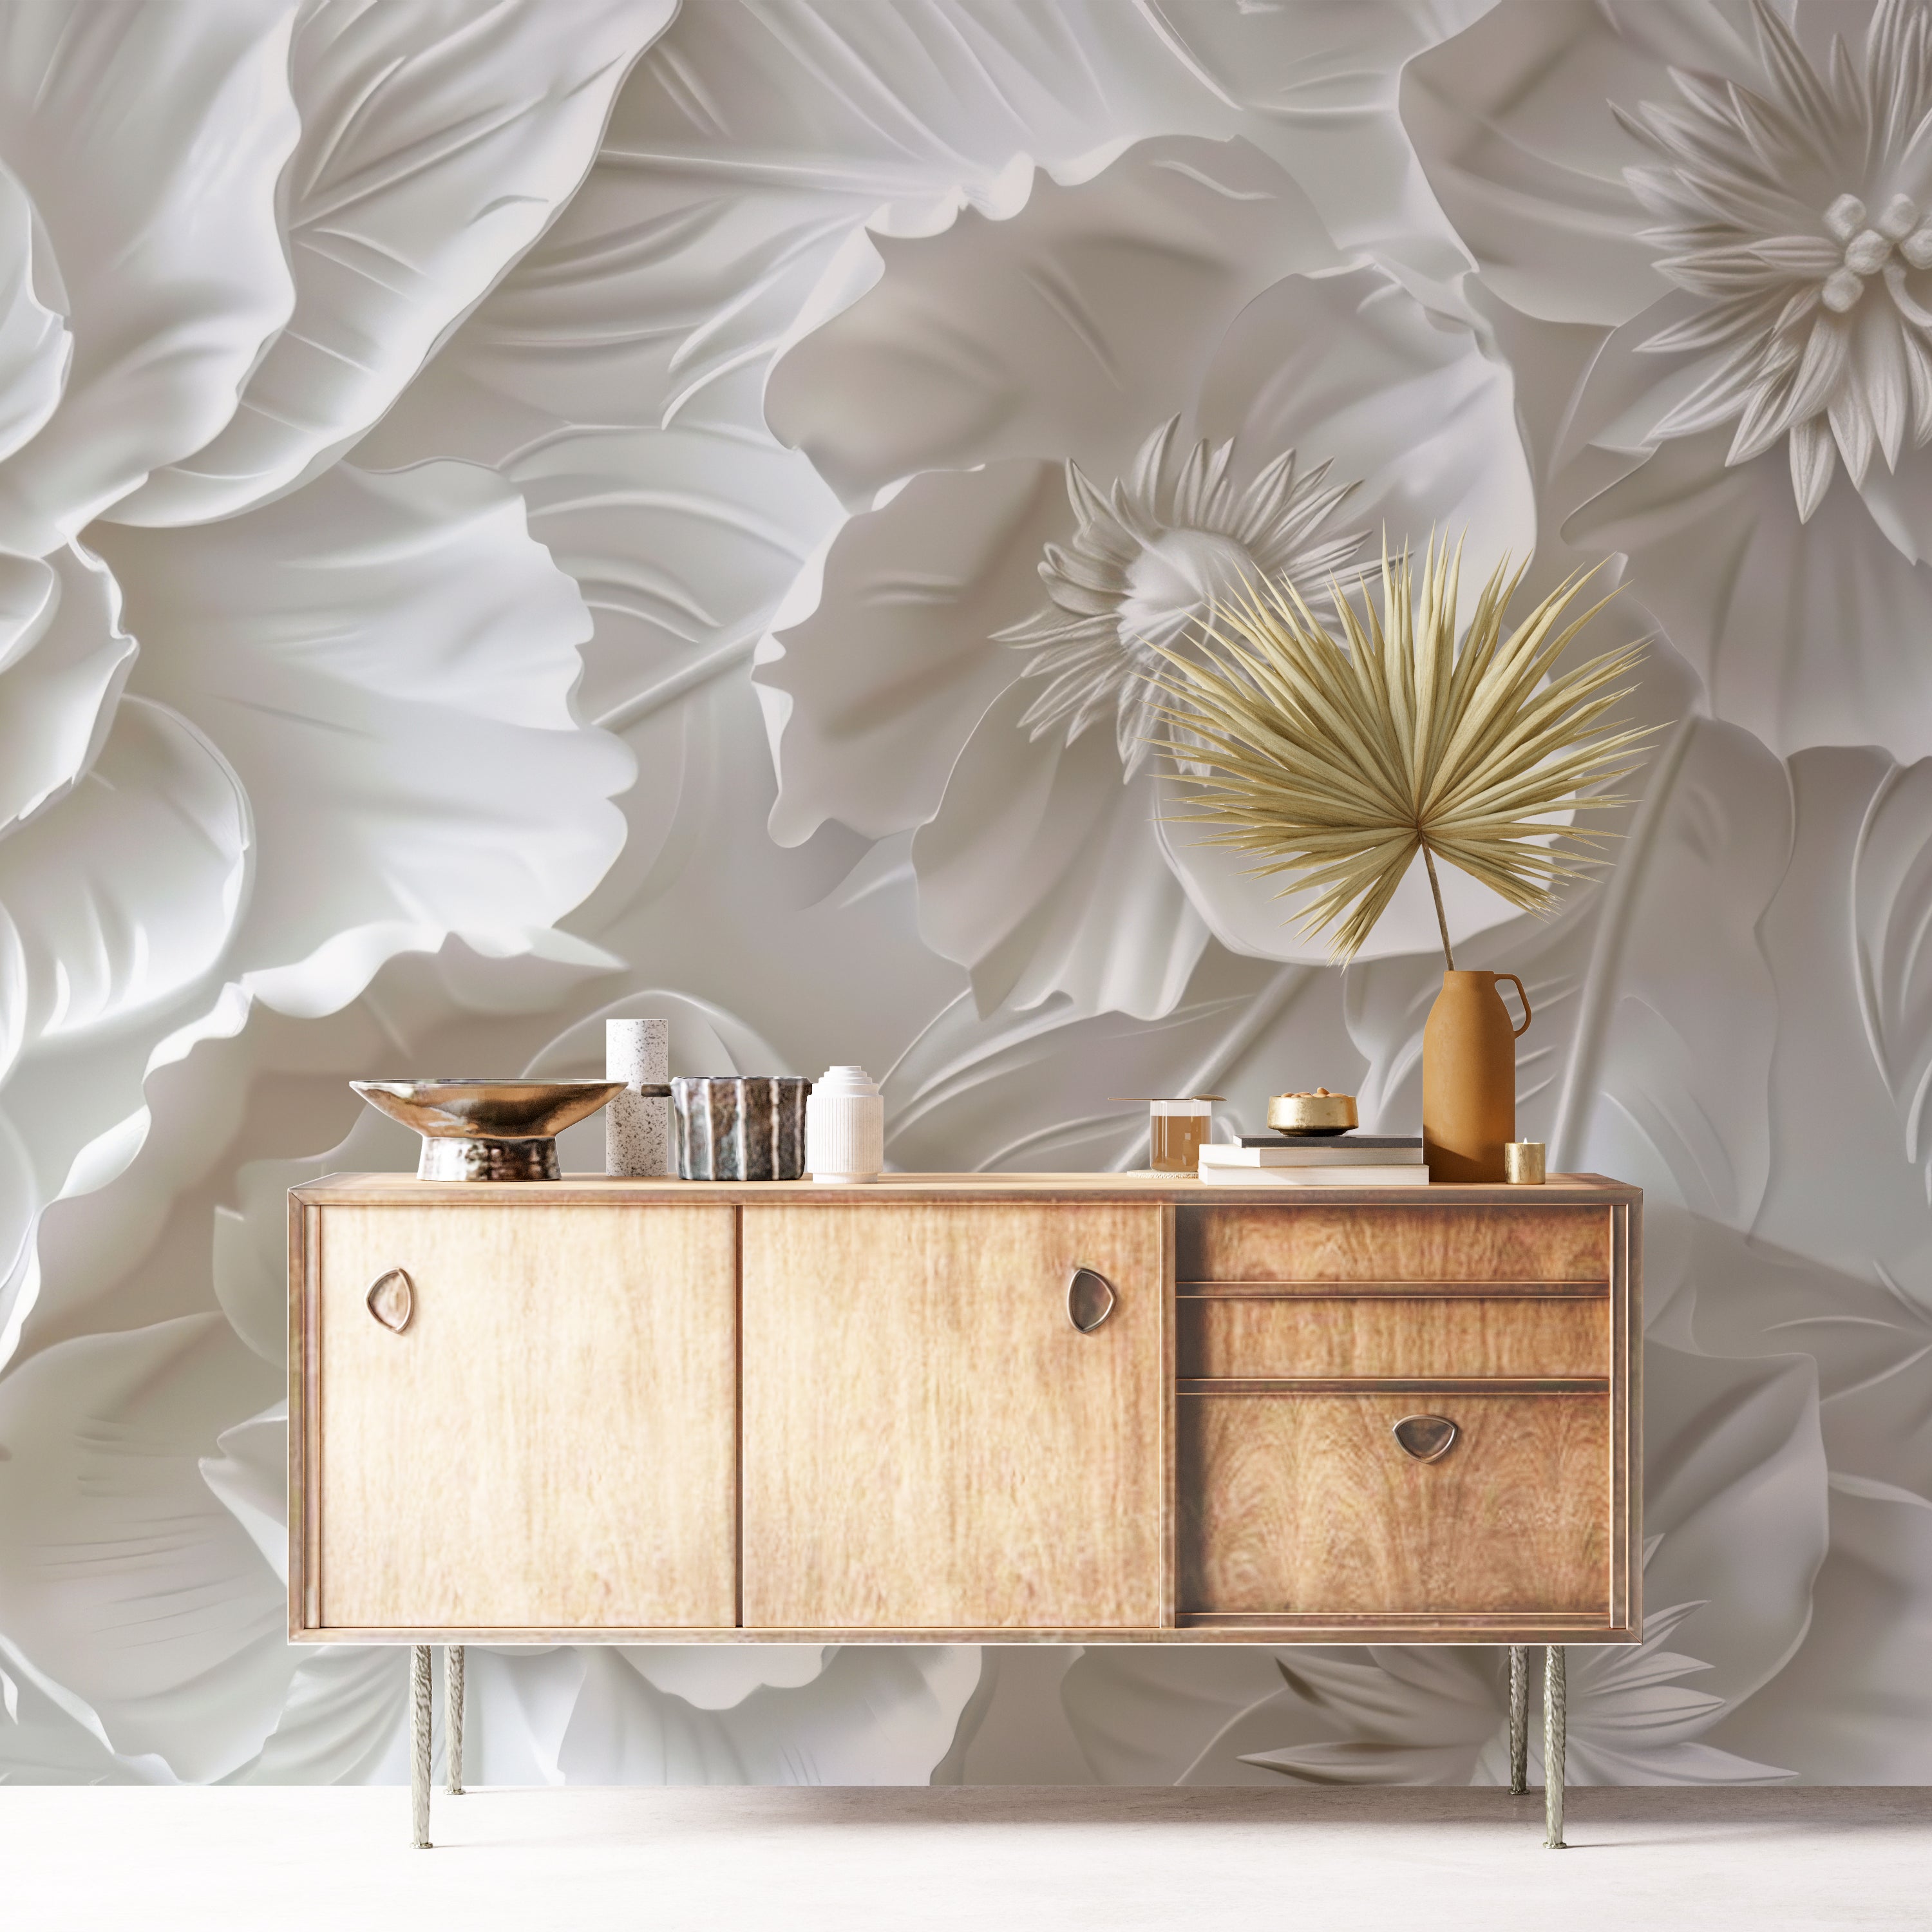 Delicatesse en Blanc: wallpaper with a 3D flower pattern 